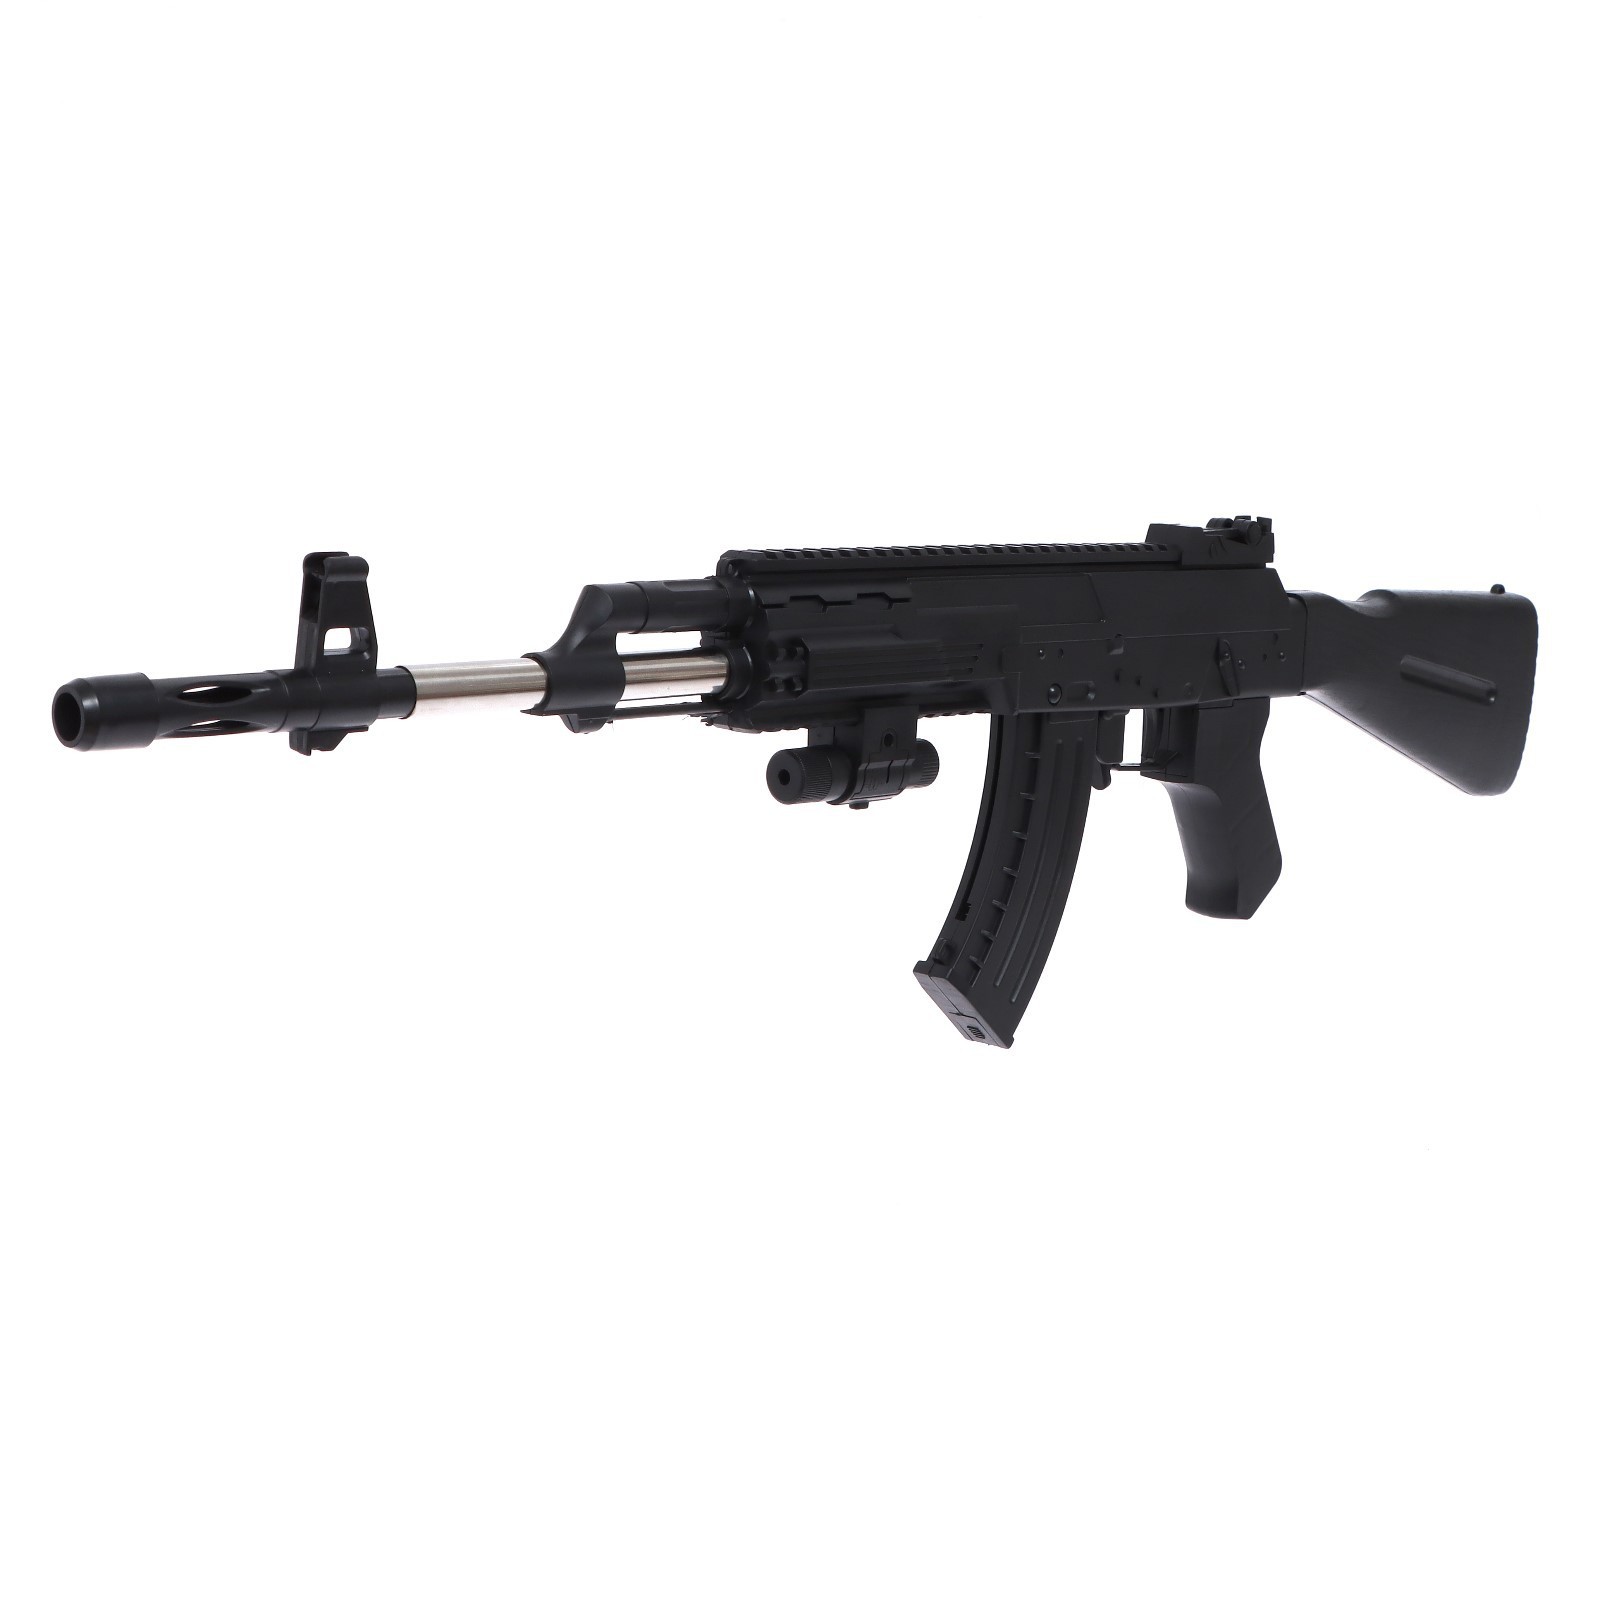 Автомат КНР АК-47, с лазером, черный, игрушечный, пластиковый 977-2